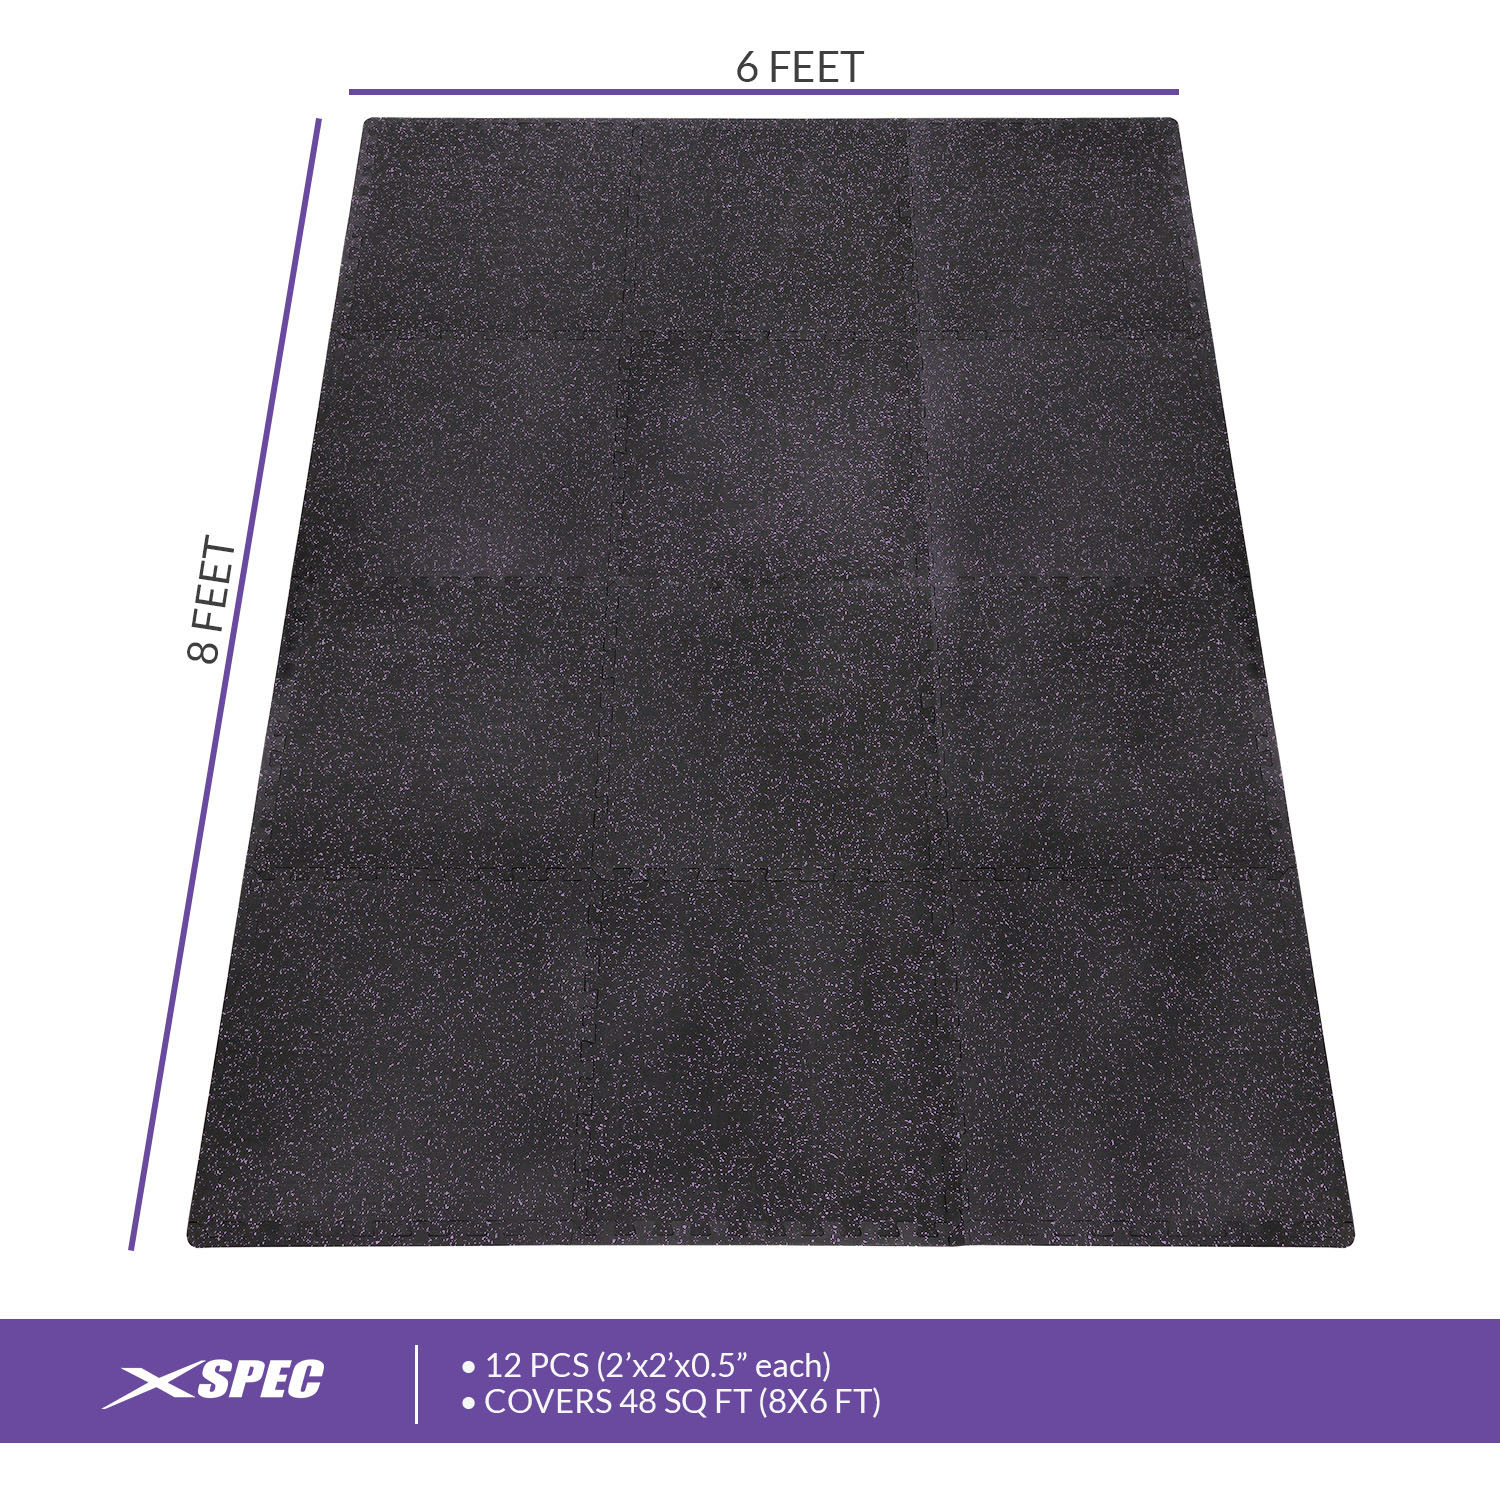 Xspec 1/2" Thick 48 Sq Ft Rubber Top EVA Foam Home Gym Mats 12 pcs, Purple Black